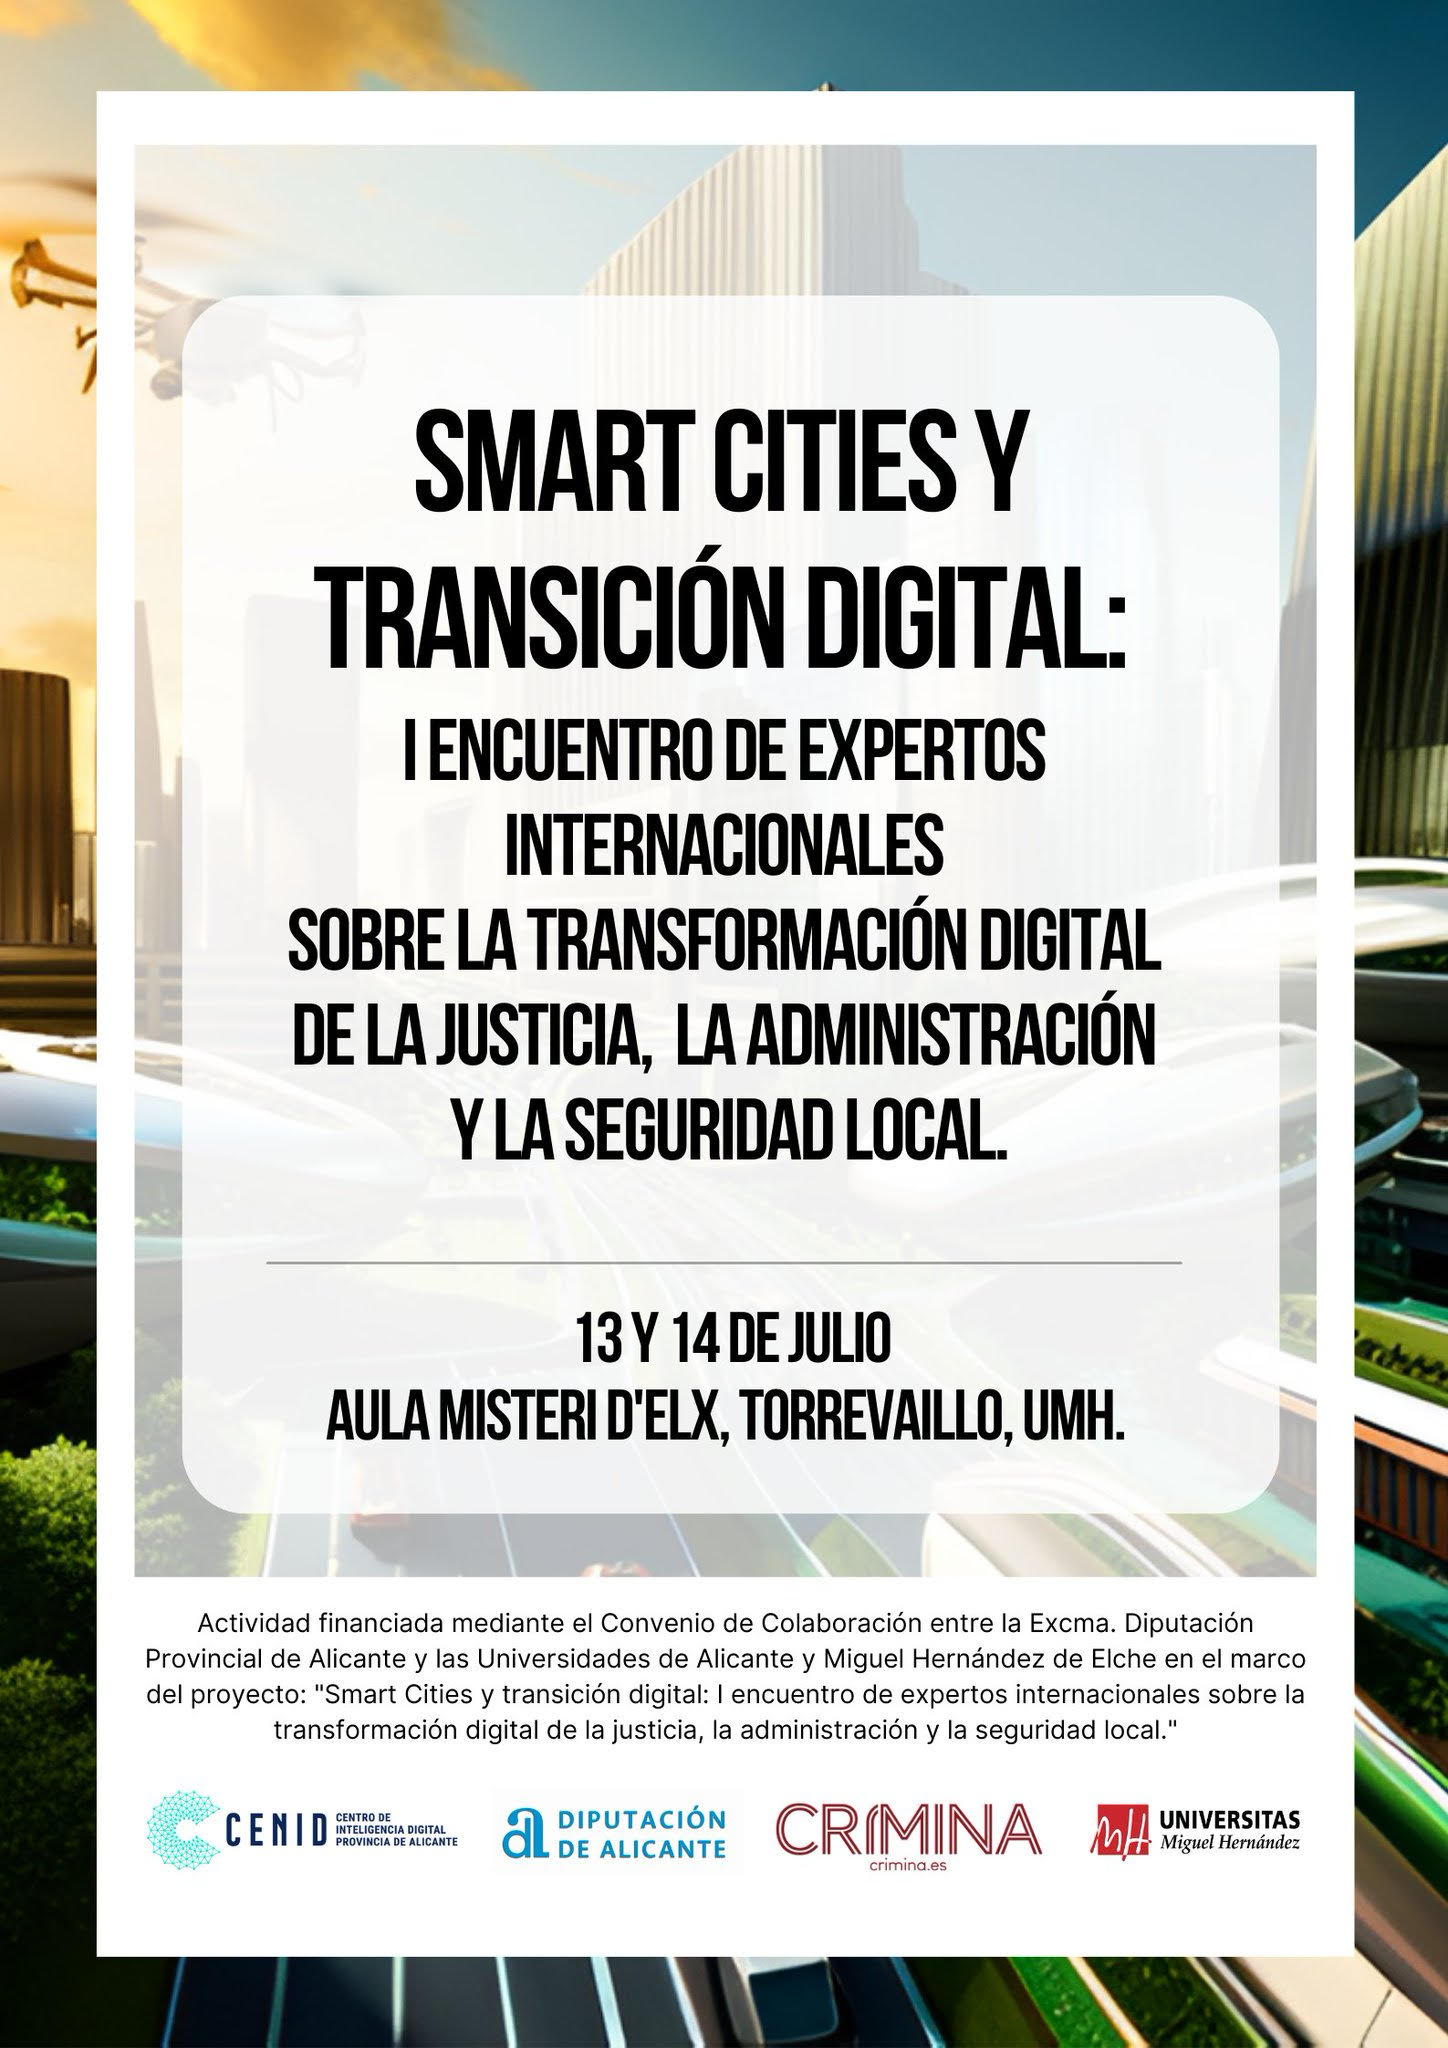 El evento “SMART CITIES Y TRANSICIÓN DIGITAL” se organiza los días 13 y 14 de Julio